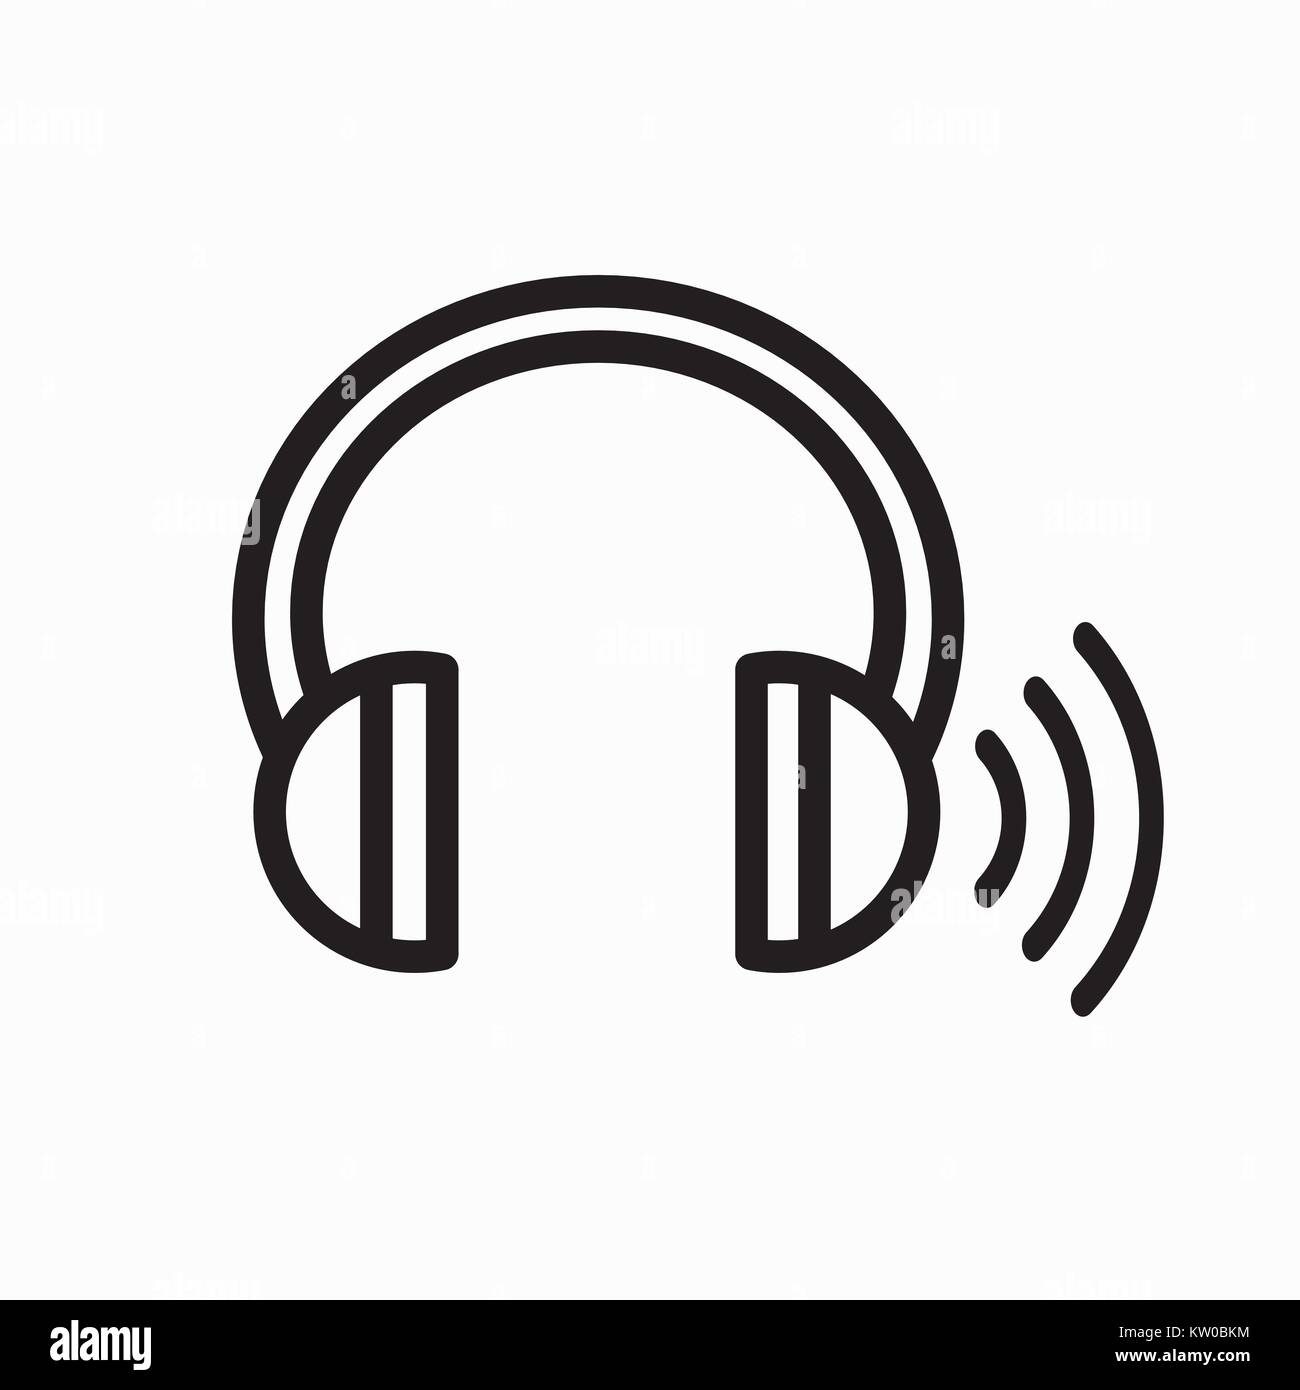 Kopfhörer für Ohr screening test - 1 Seite hat in Klingeln Stock Vektor